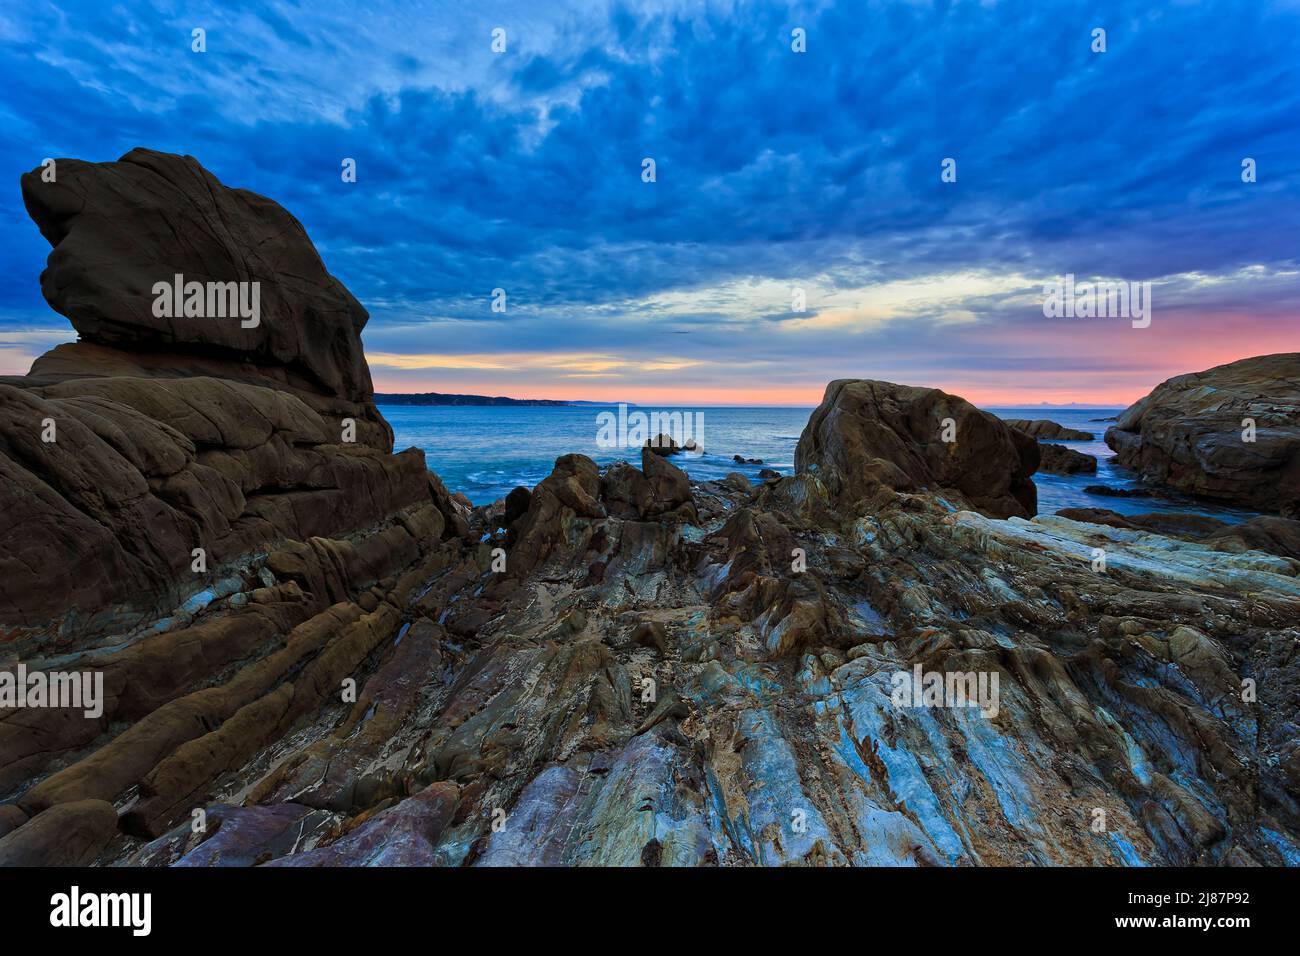 Meerwasser erodierte Felsen am Strand von Tathra an der Sapphire Coast in Australien - Sonnenaufgangslandschaft. Stockfoto